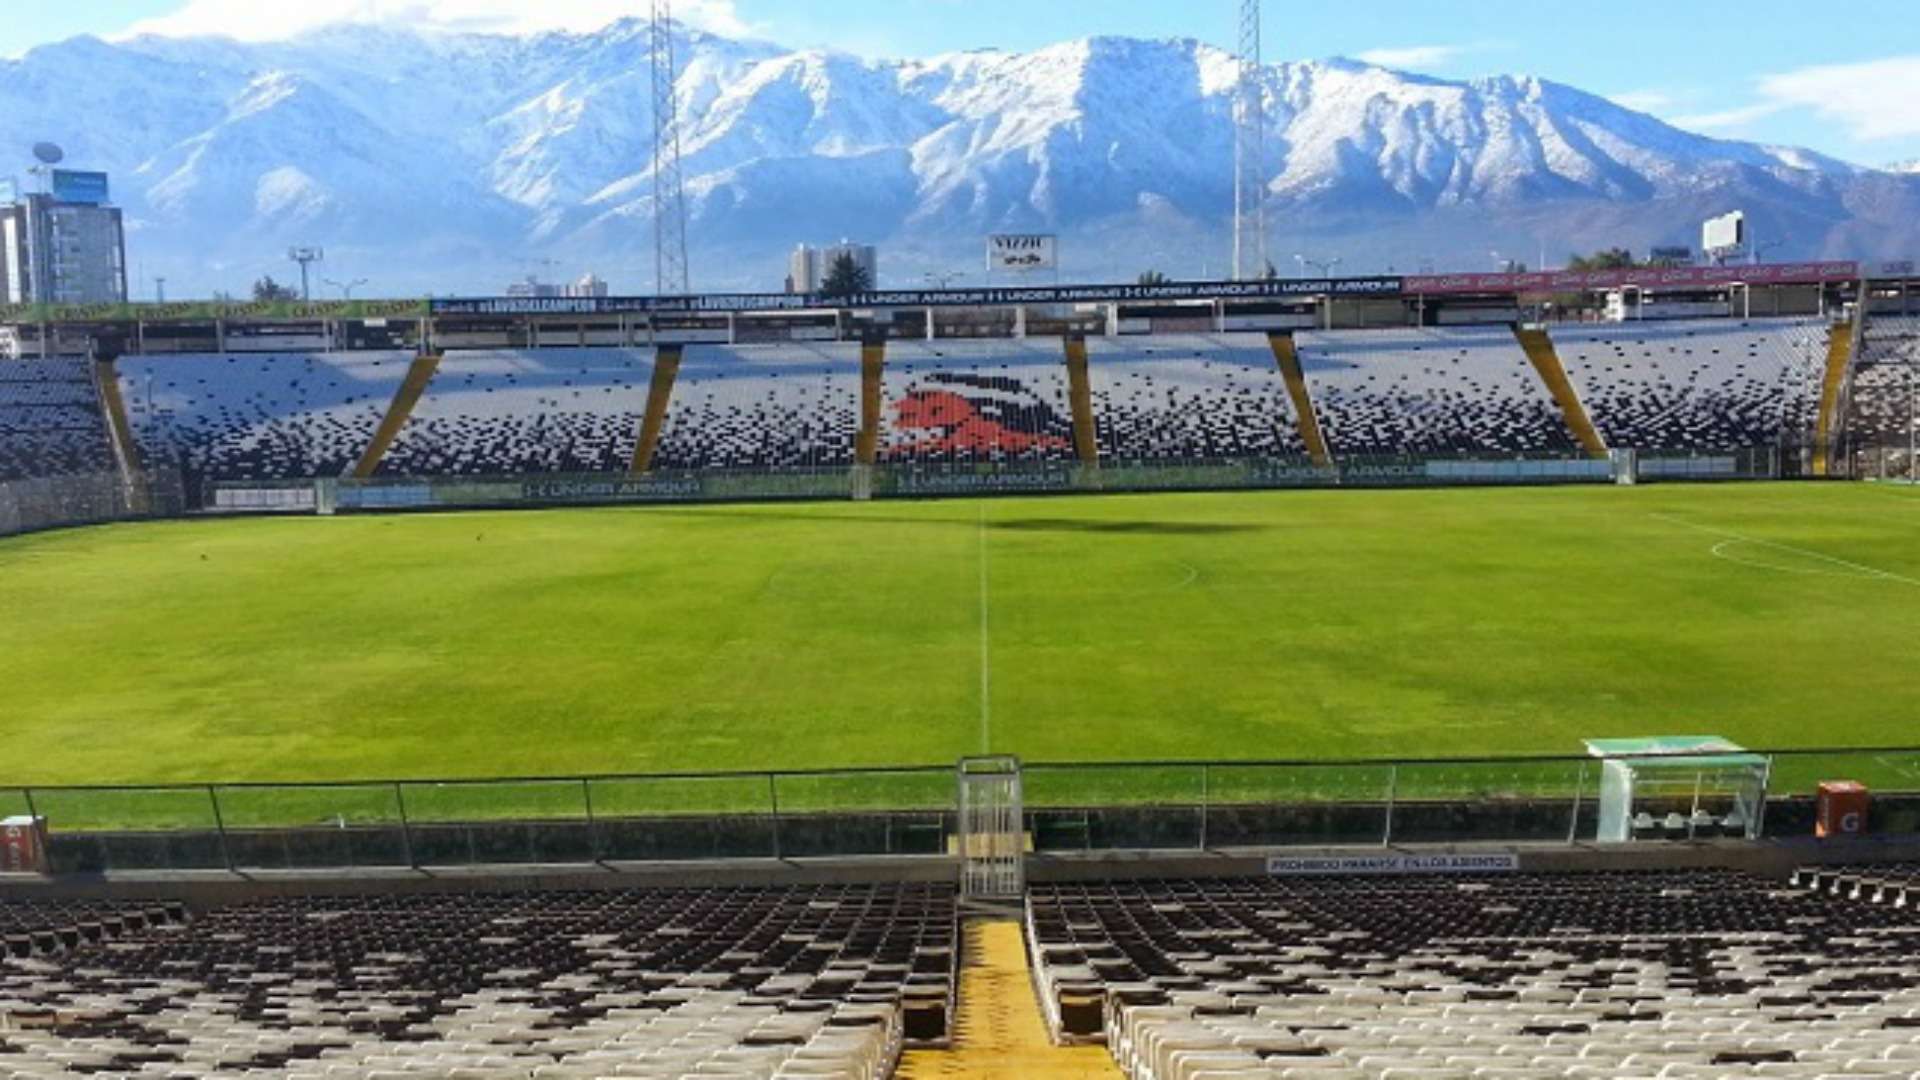 Estadio Monumental